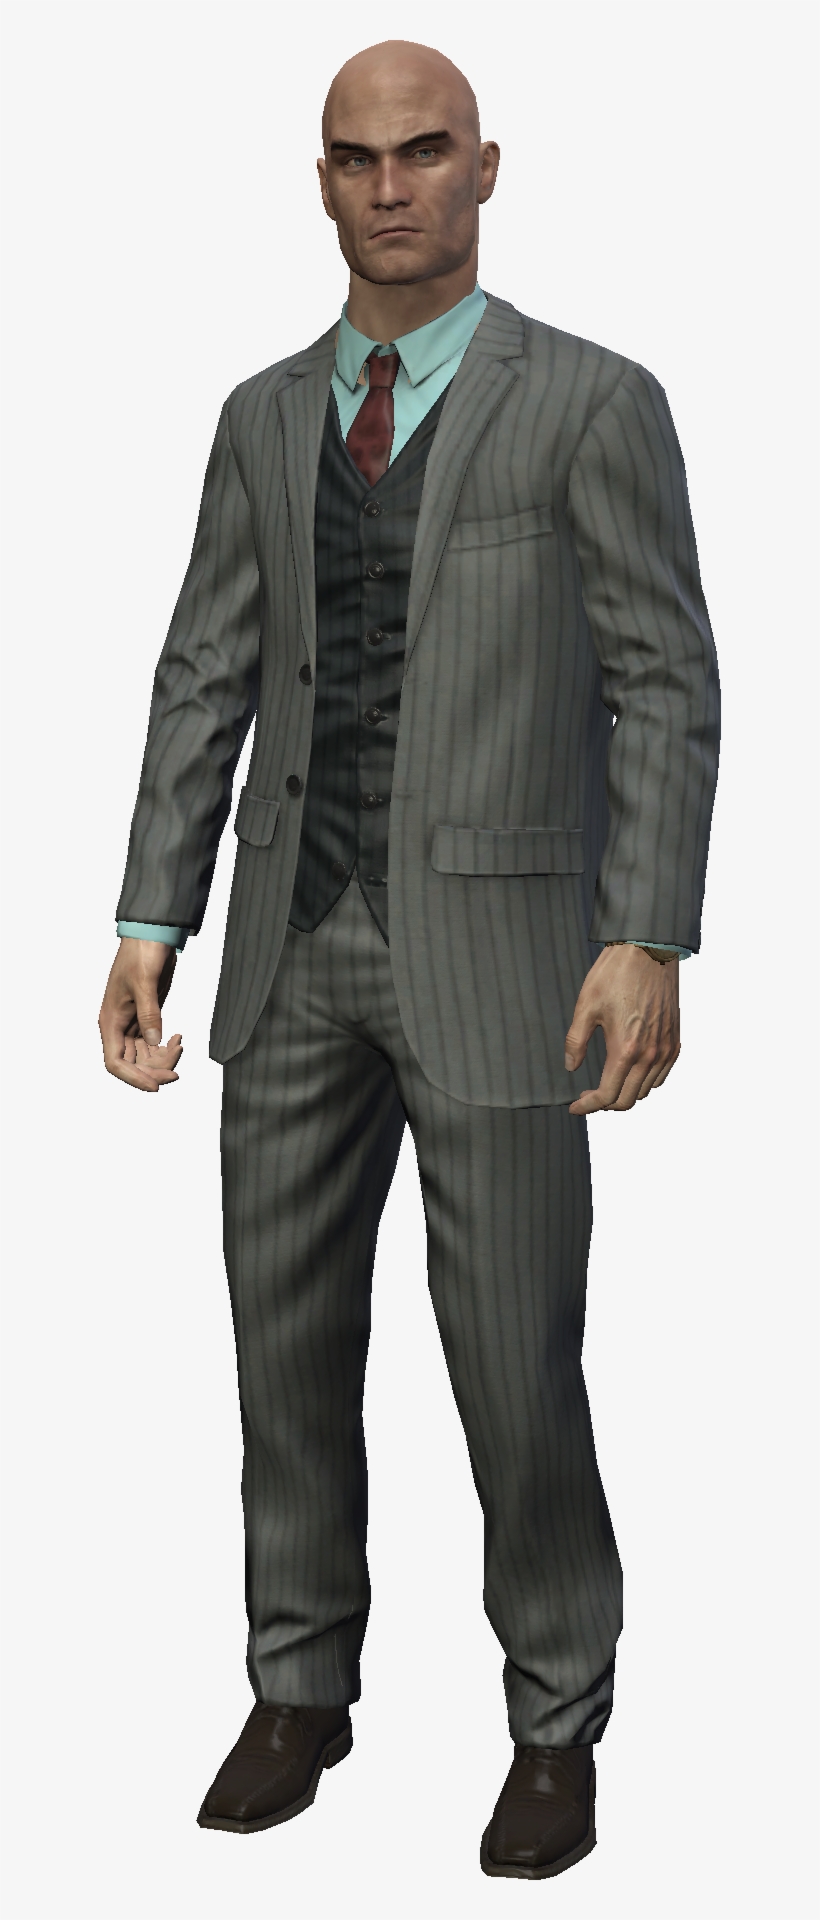 Arms Dealer Outfit - La Noire Outsider Outfit, transparent png #8137995